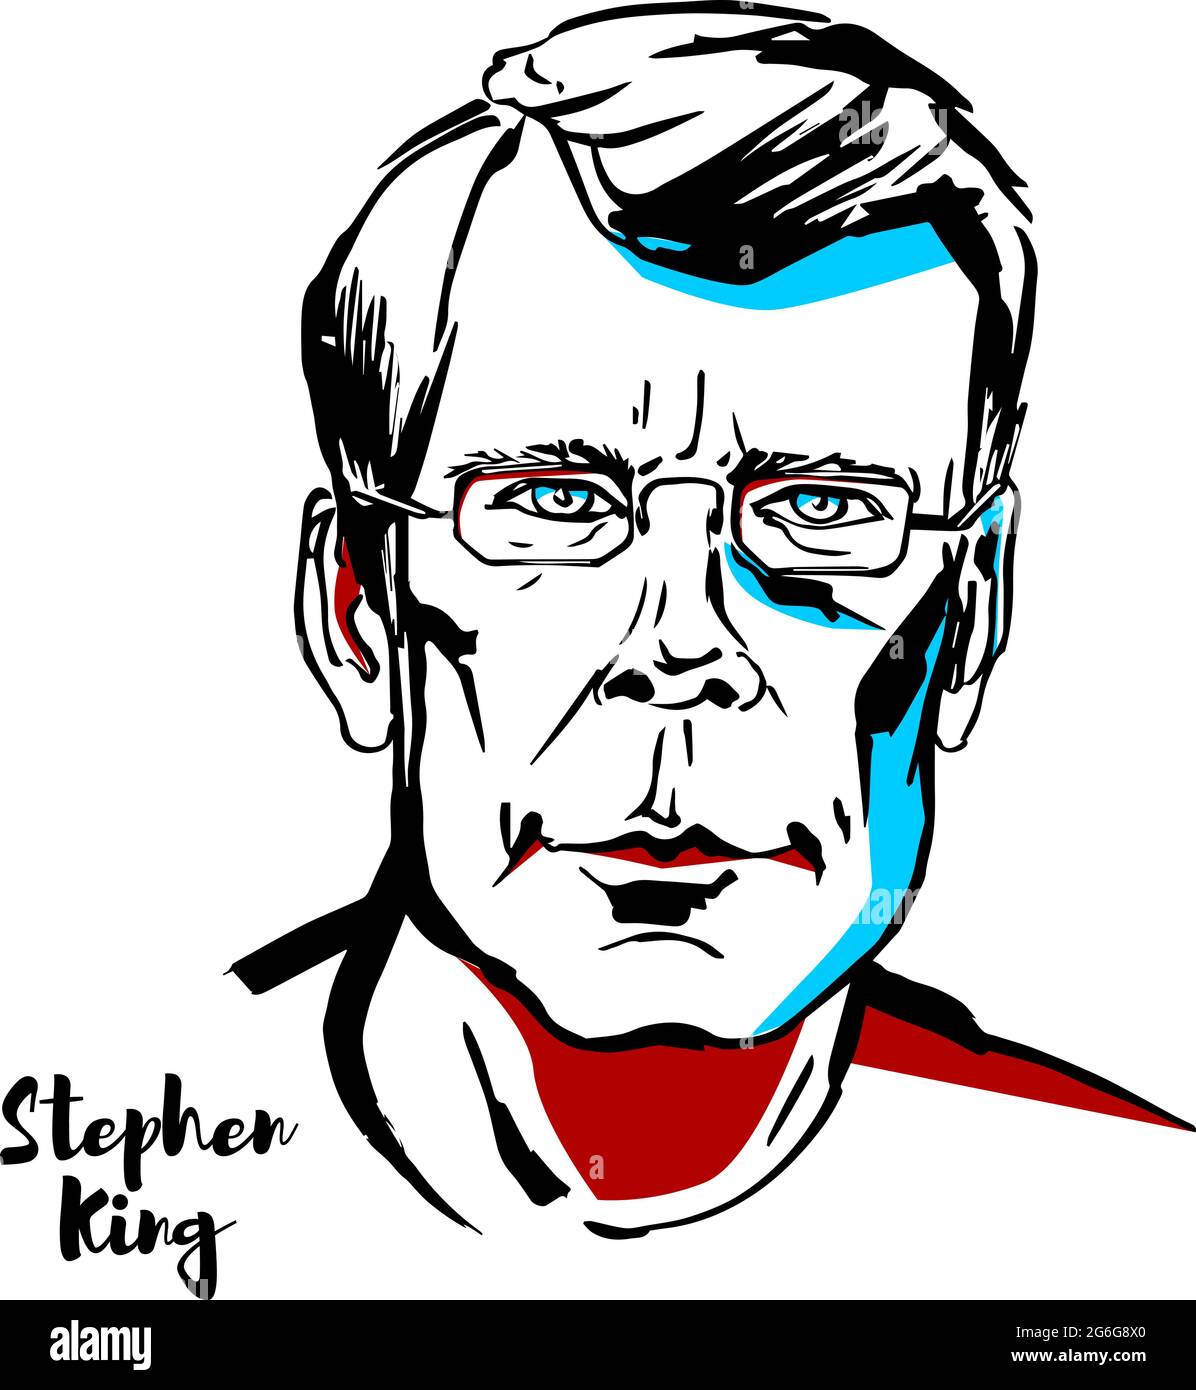 MOSCA, RUSSIA - 21 AGOSTO 2018: Stephen King ha inciso un ritratto vettoriale con contorni a inchiostro. Autore americano di horror, finzione soprannaturale, suspense, Illustrazione Vettoriale